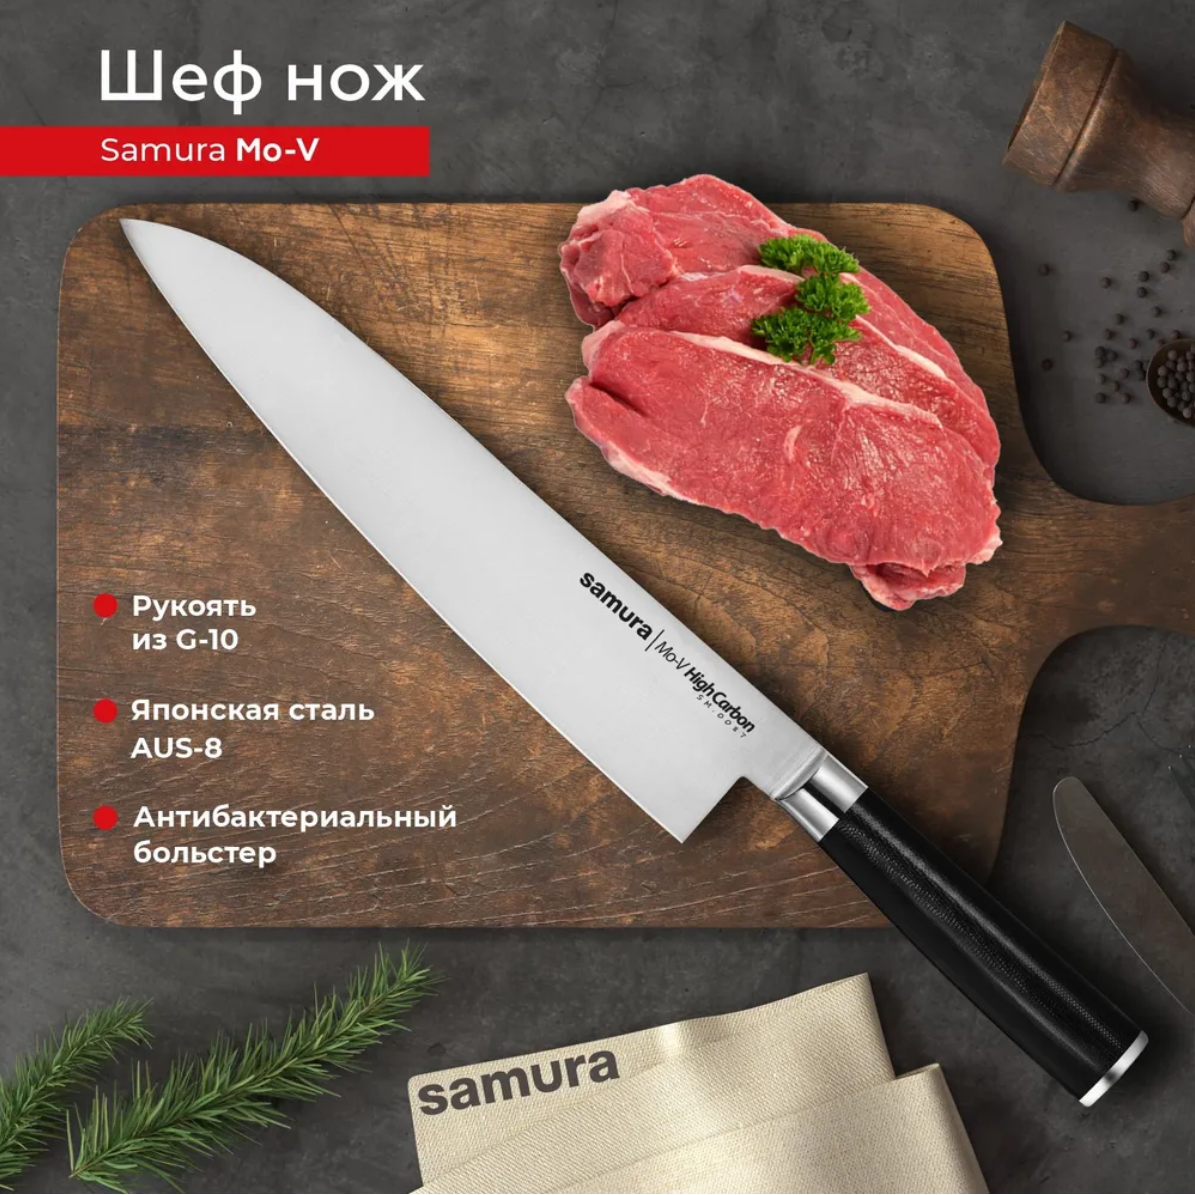 Нож кухонный поварской Гранд Шеф Samura Mo-V универсальный профессиональный SM-0087/G-10